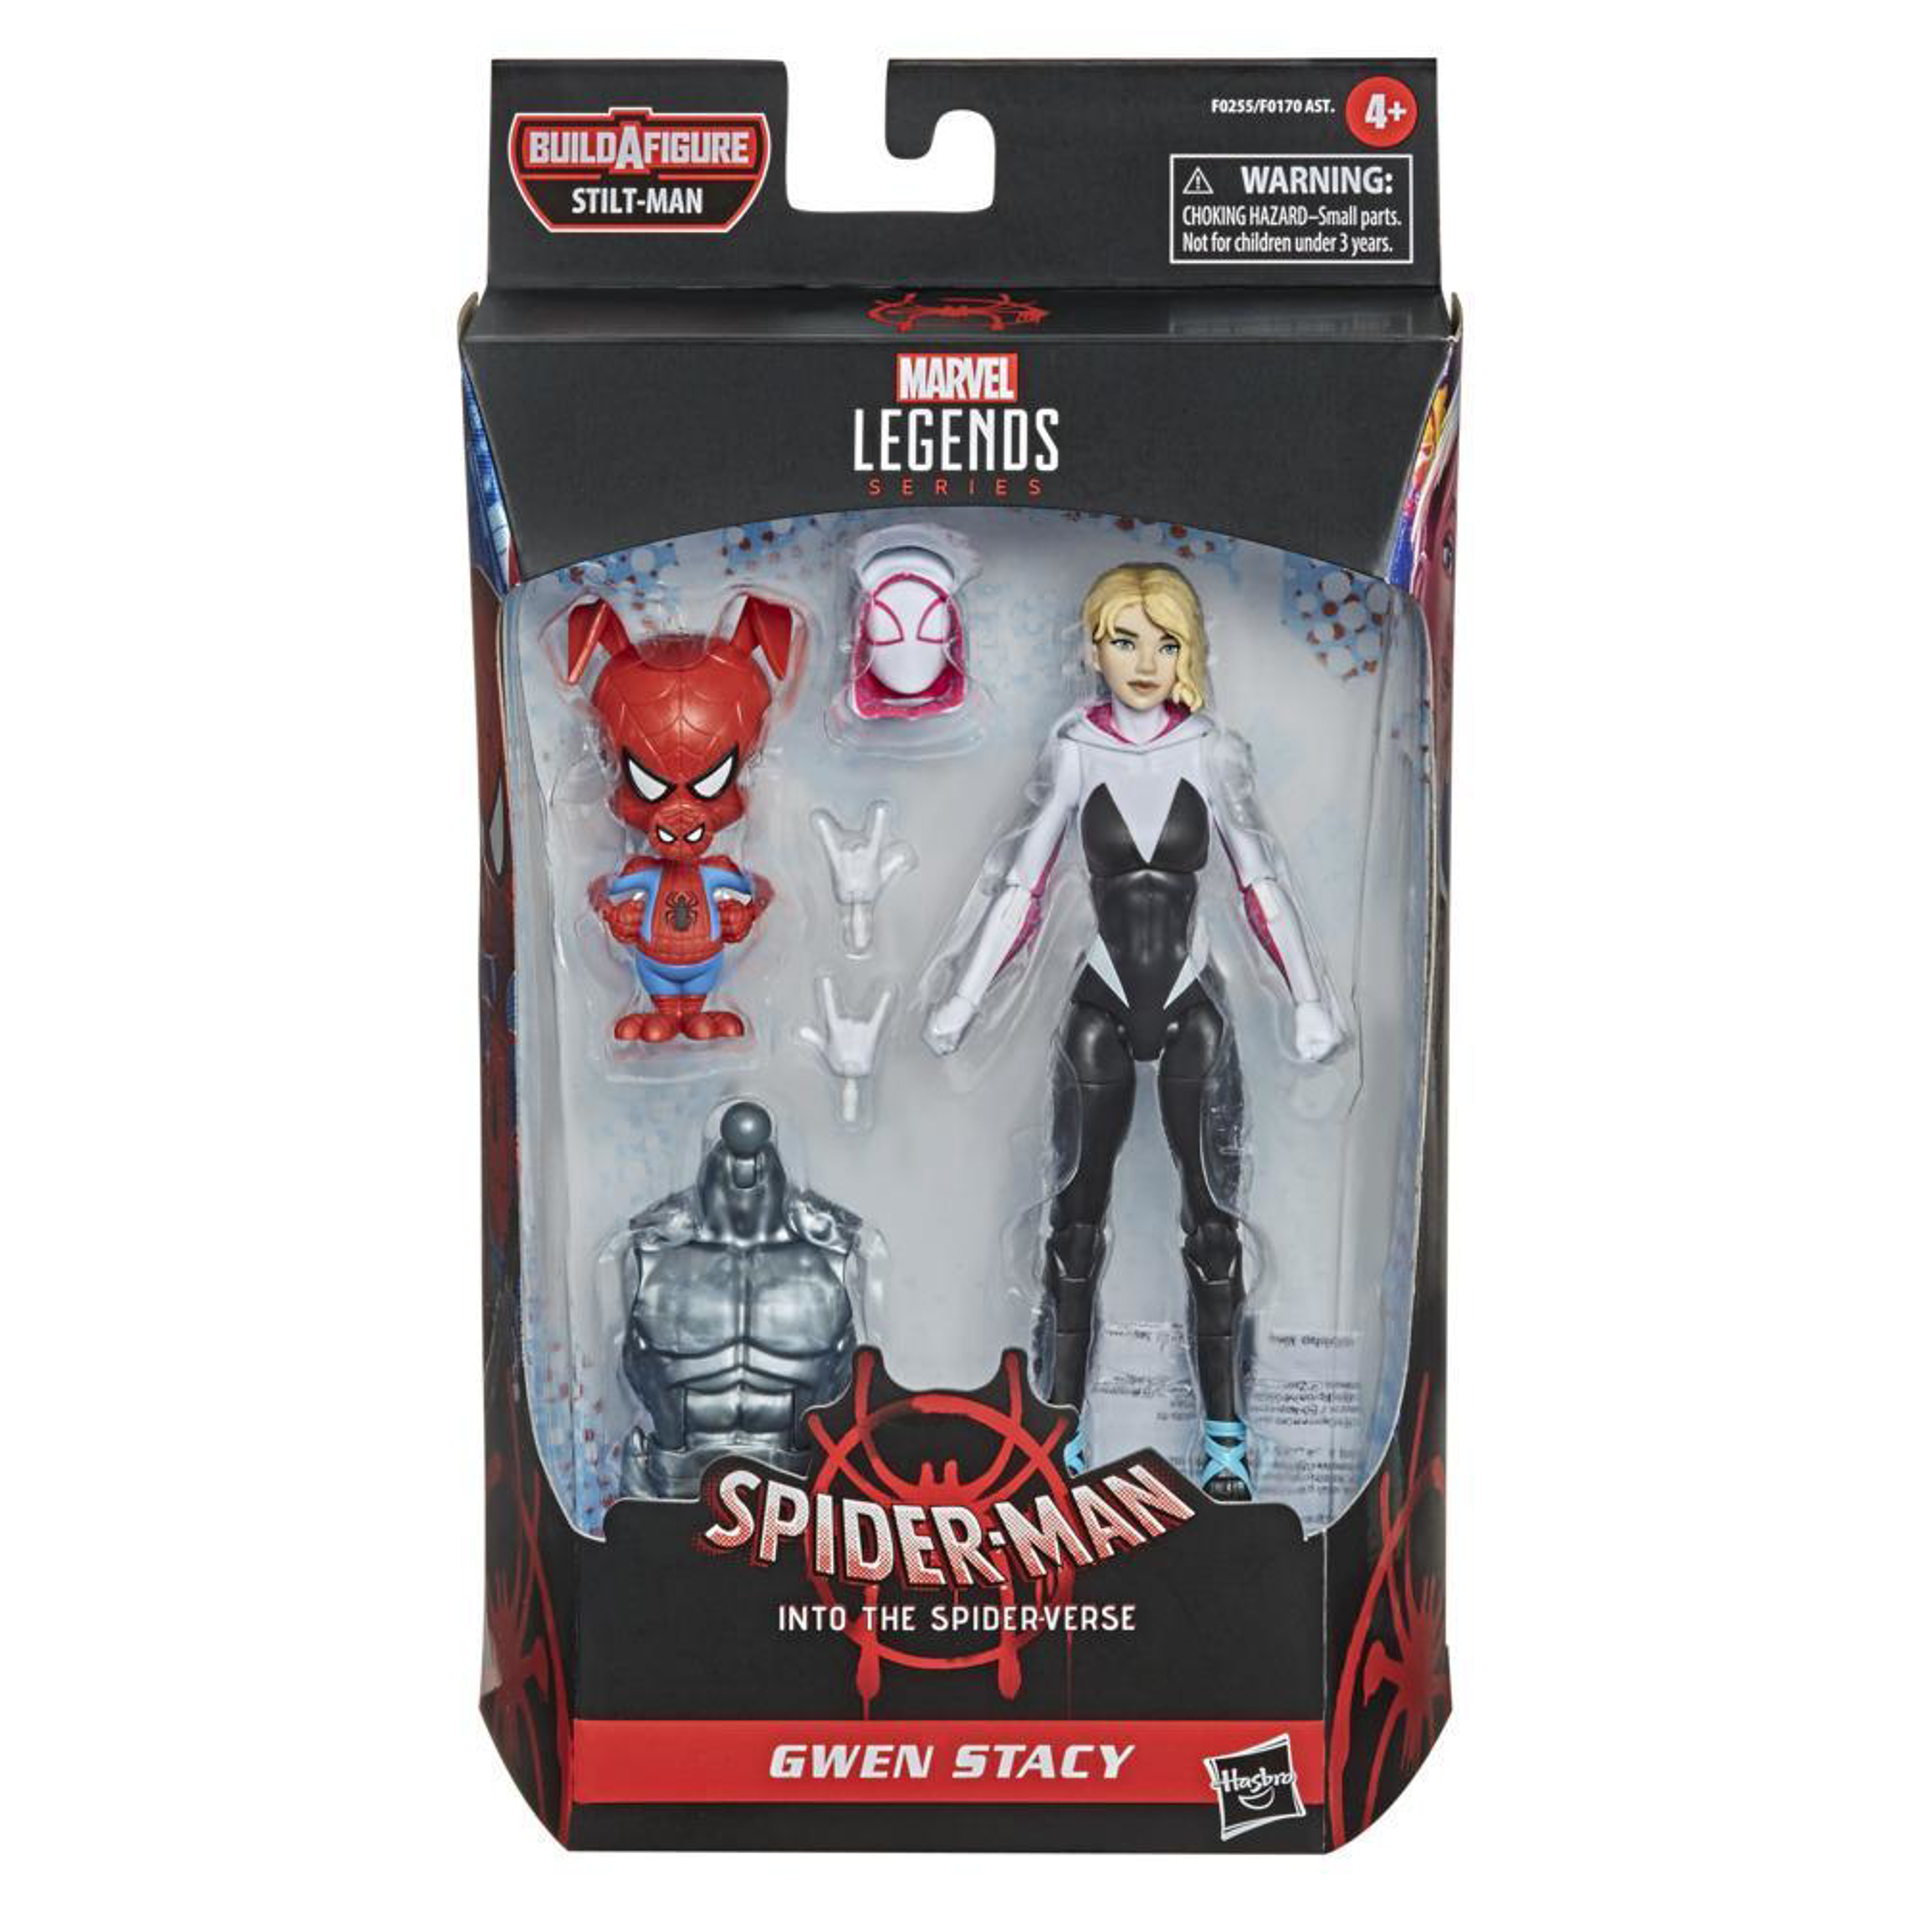 Marvel Legends Series - Build-A-Figure Série Silt-Man - Spider Man : New Generation Figurine d'action de Gwen Stacy 15cm